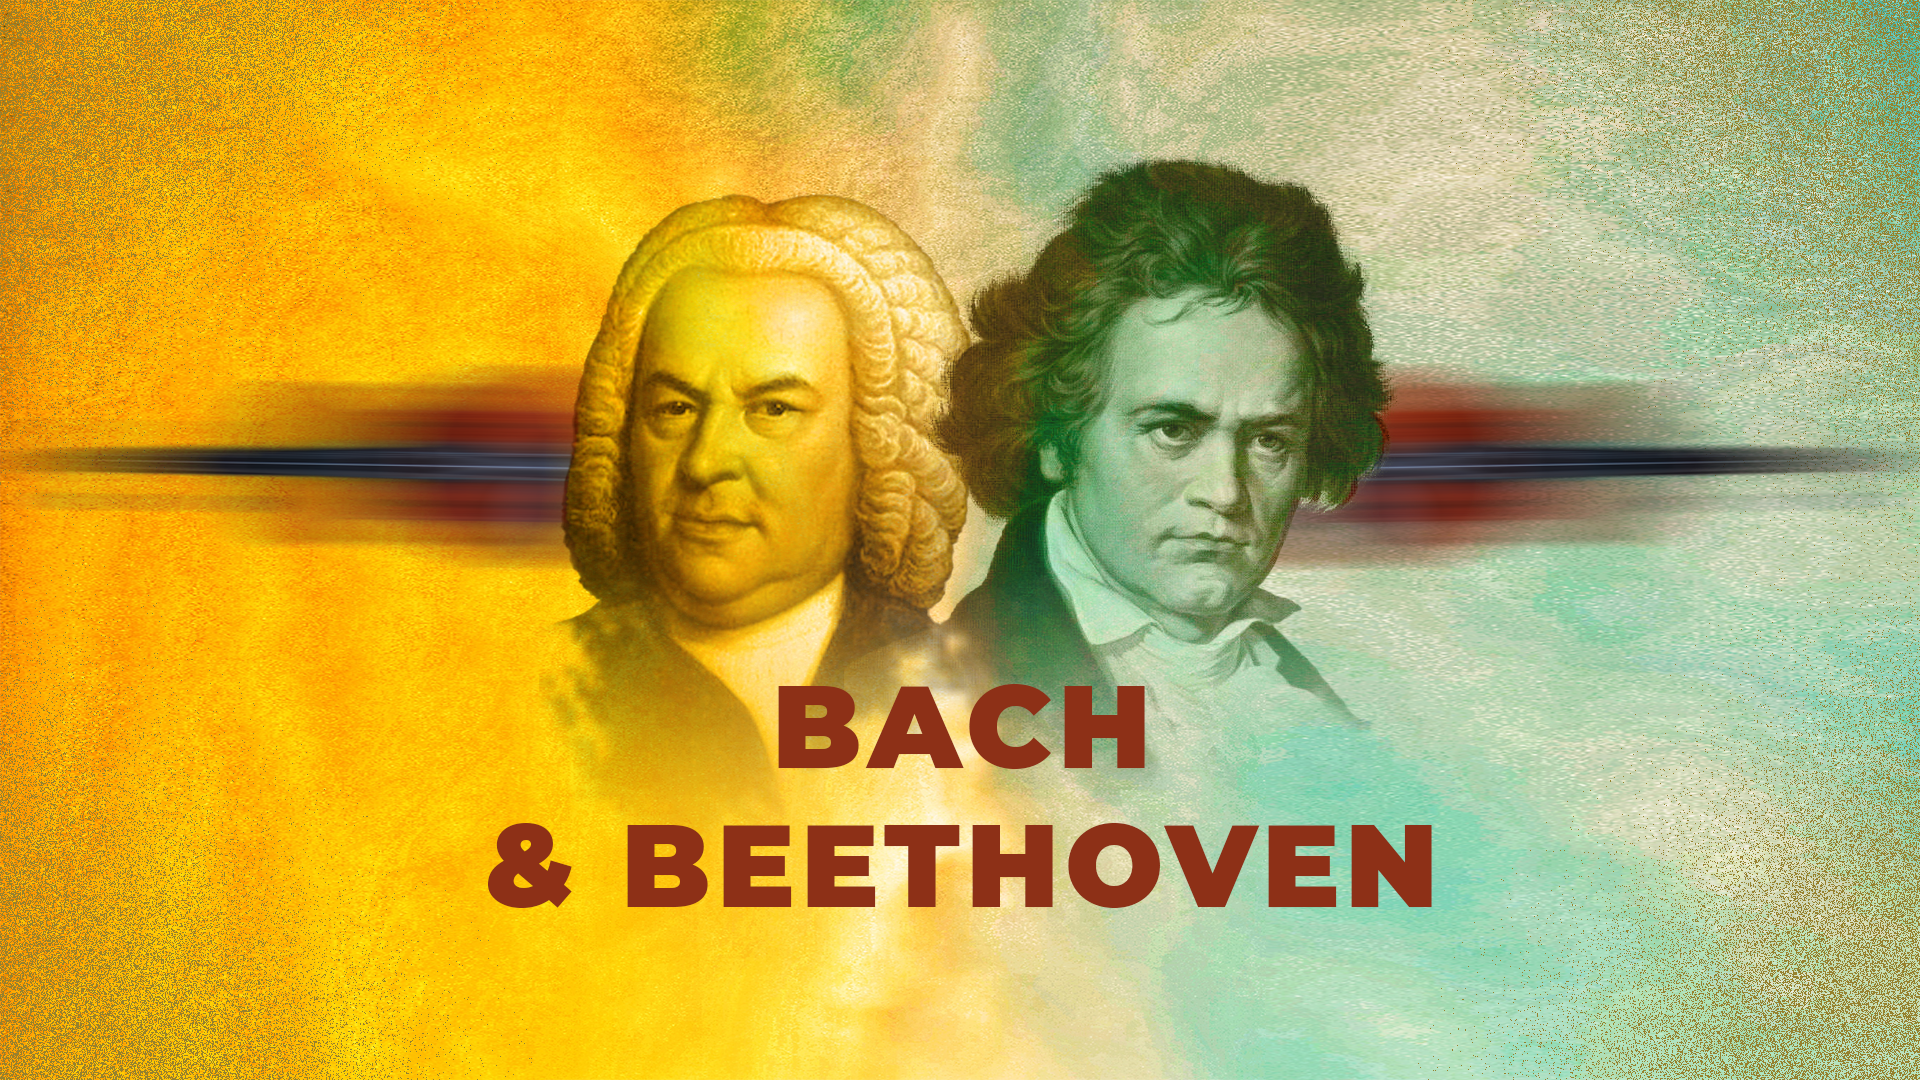 Orquesta Sinfónica Nacional presenta concierto “Bach y Beethoven” 